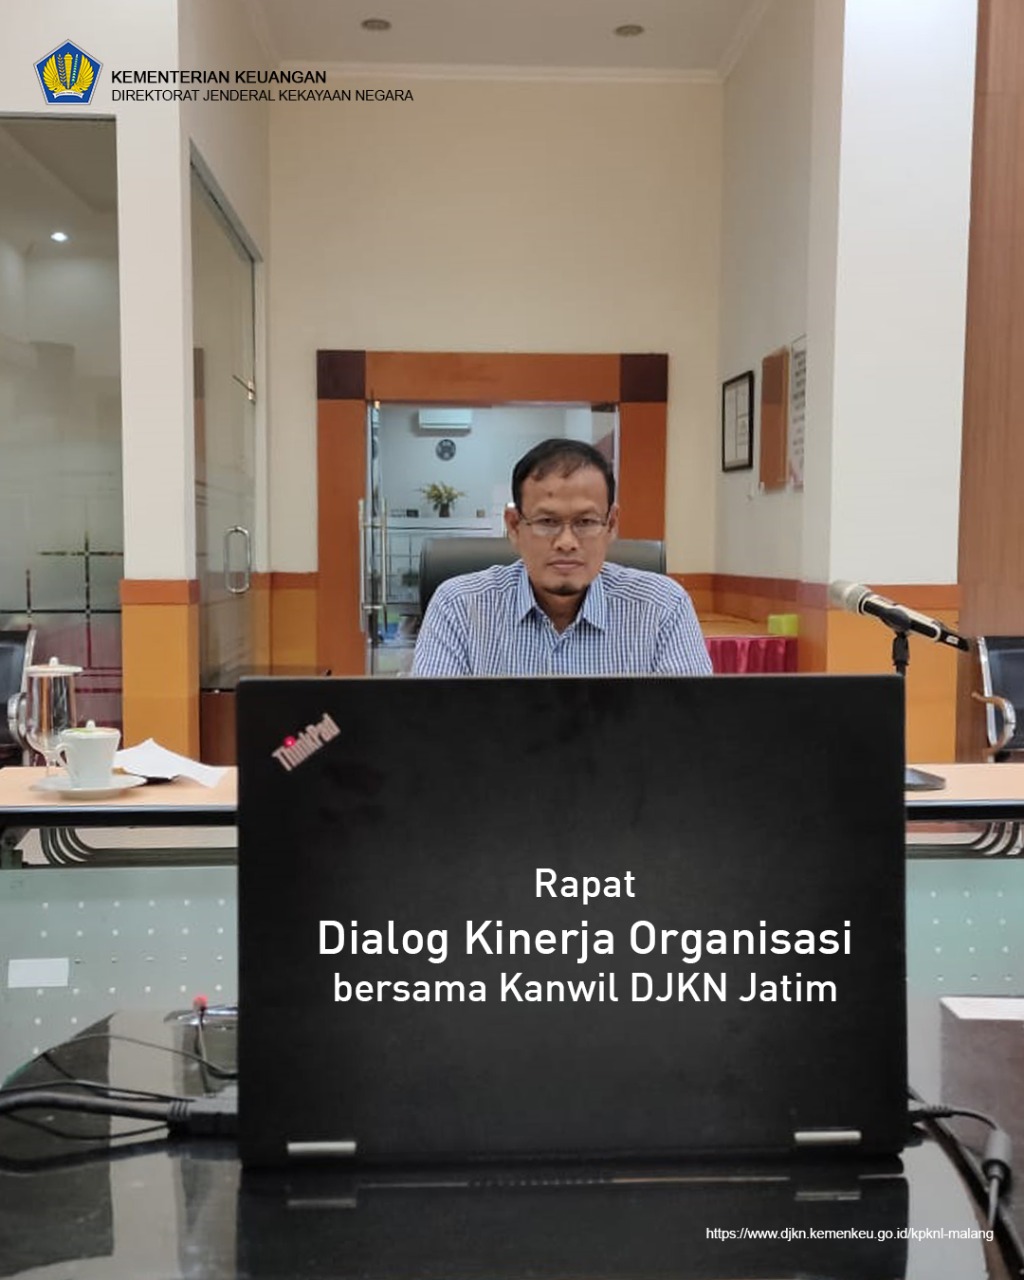 Rapat Dialog Kinerja Organisasi (DKO) bersama Kanwil DJKN Jatim